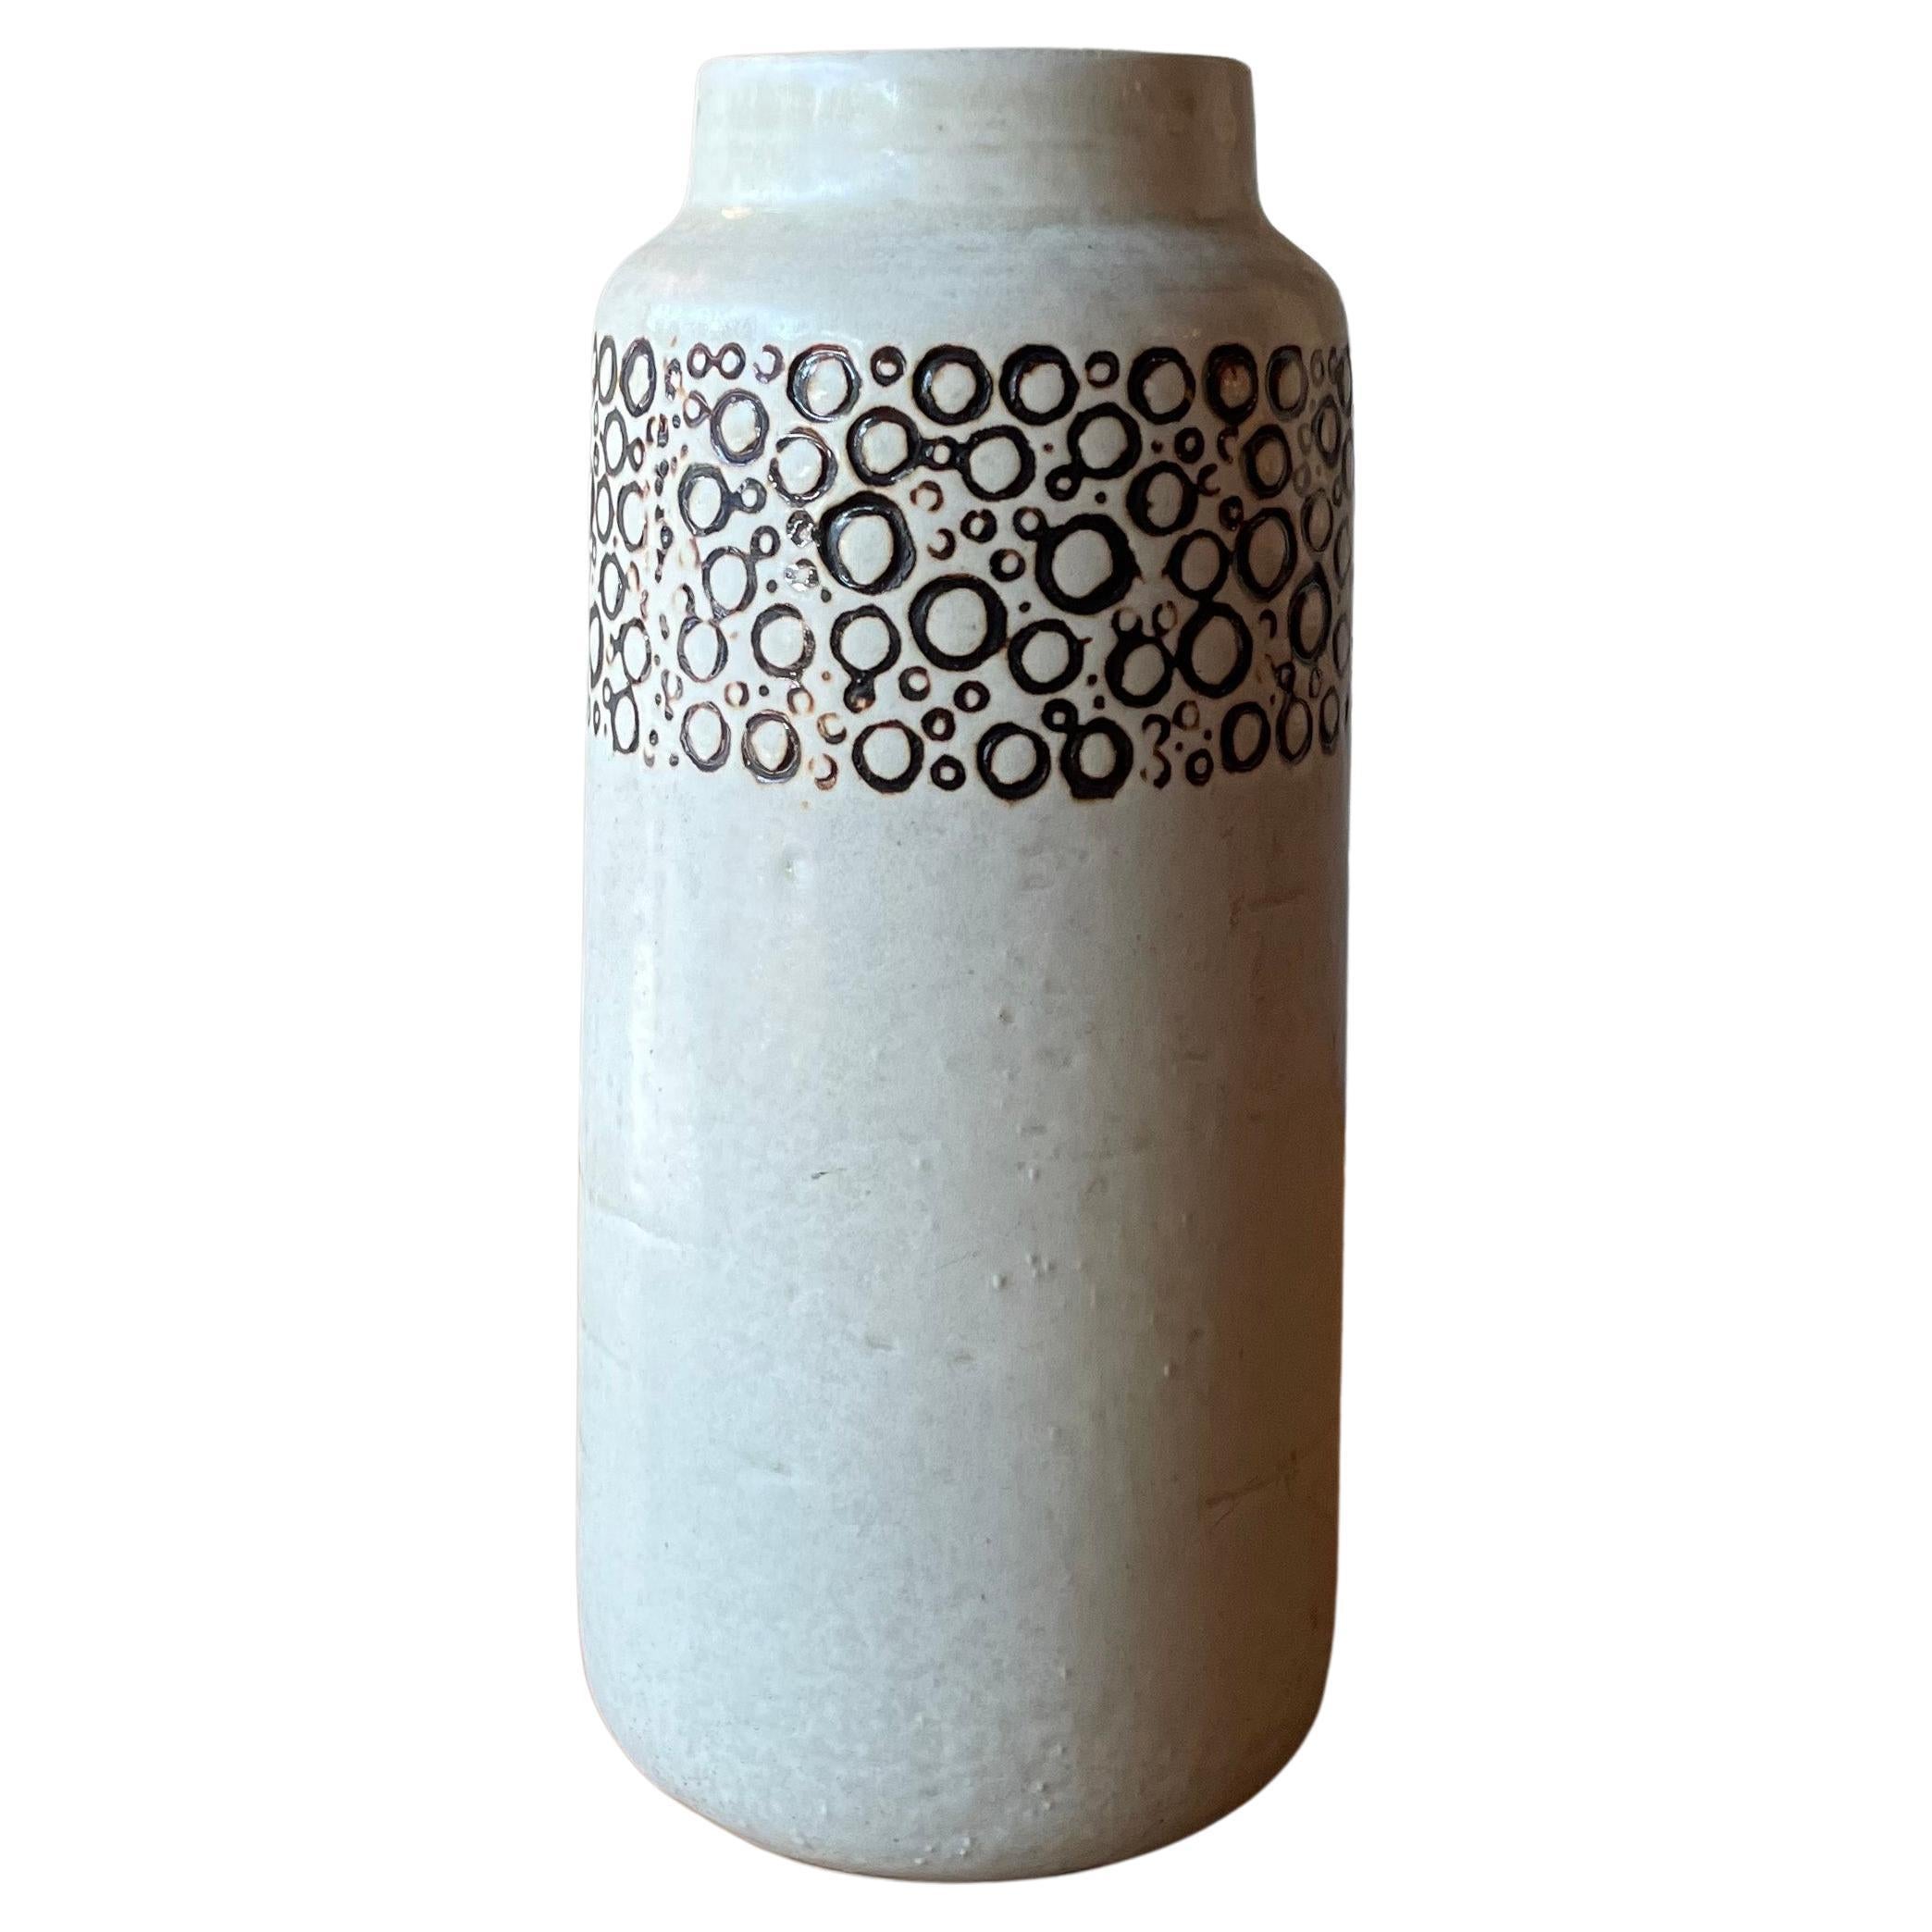 Scandinavian Modern "Kreta" Vase By Britt-Louise Sundell For Gustavsberg Studio For Sale